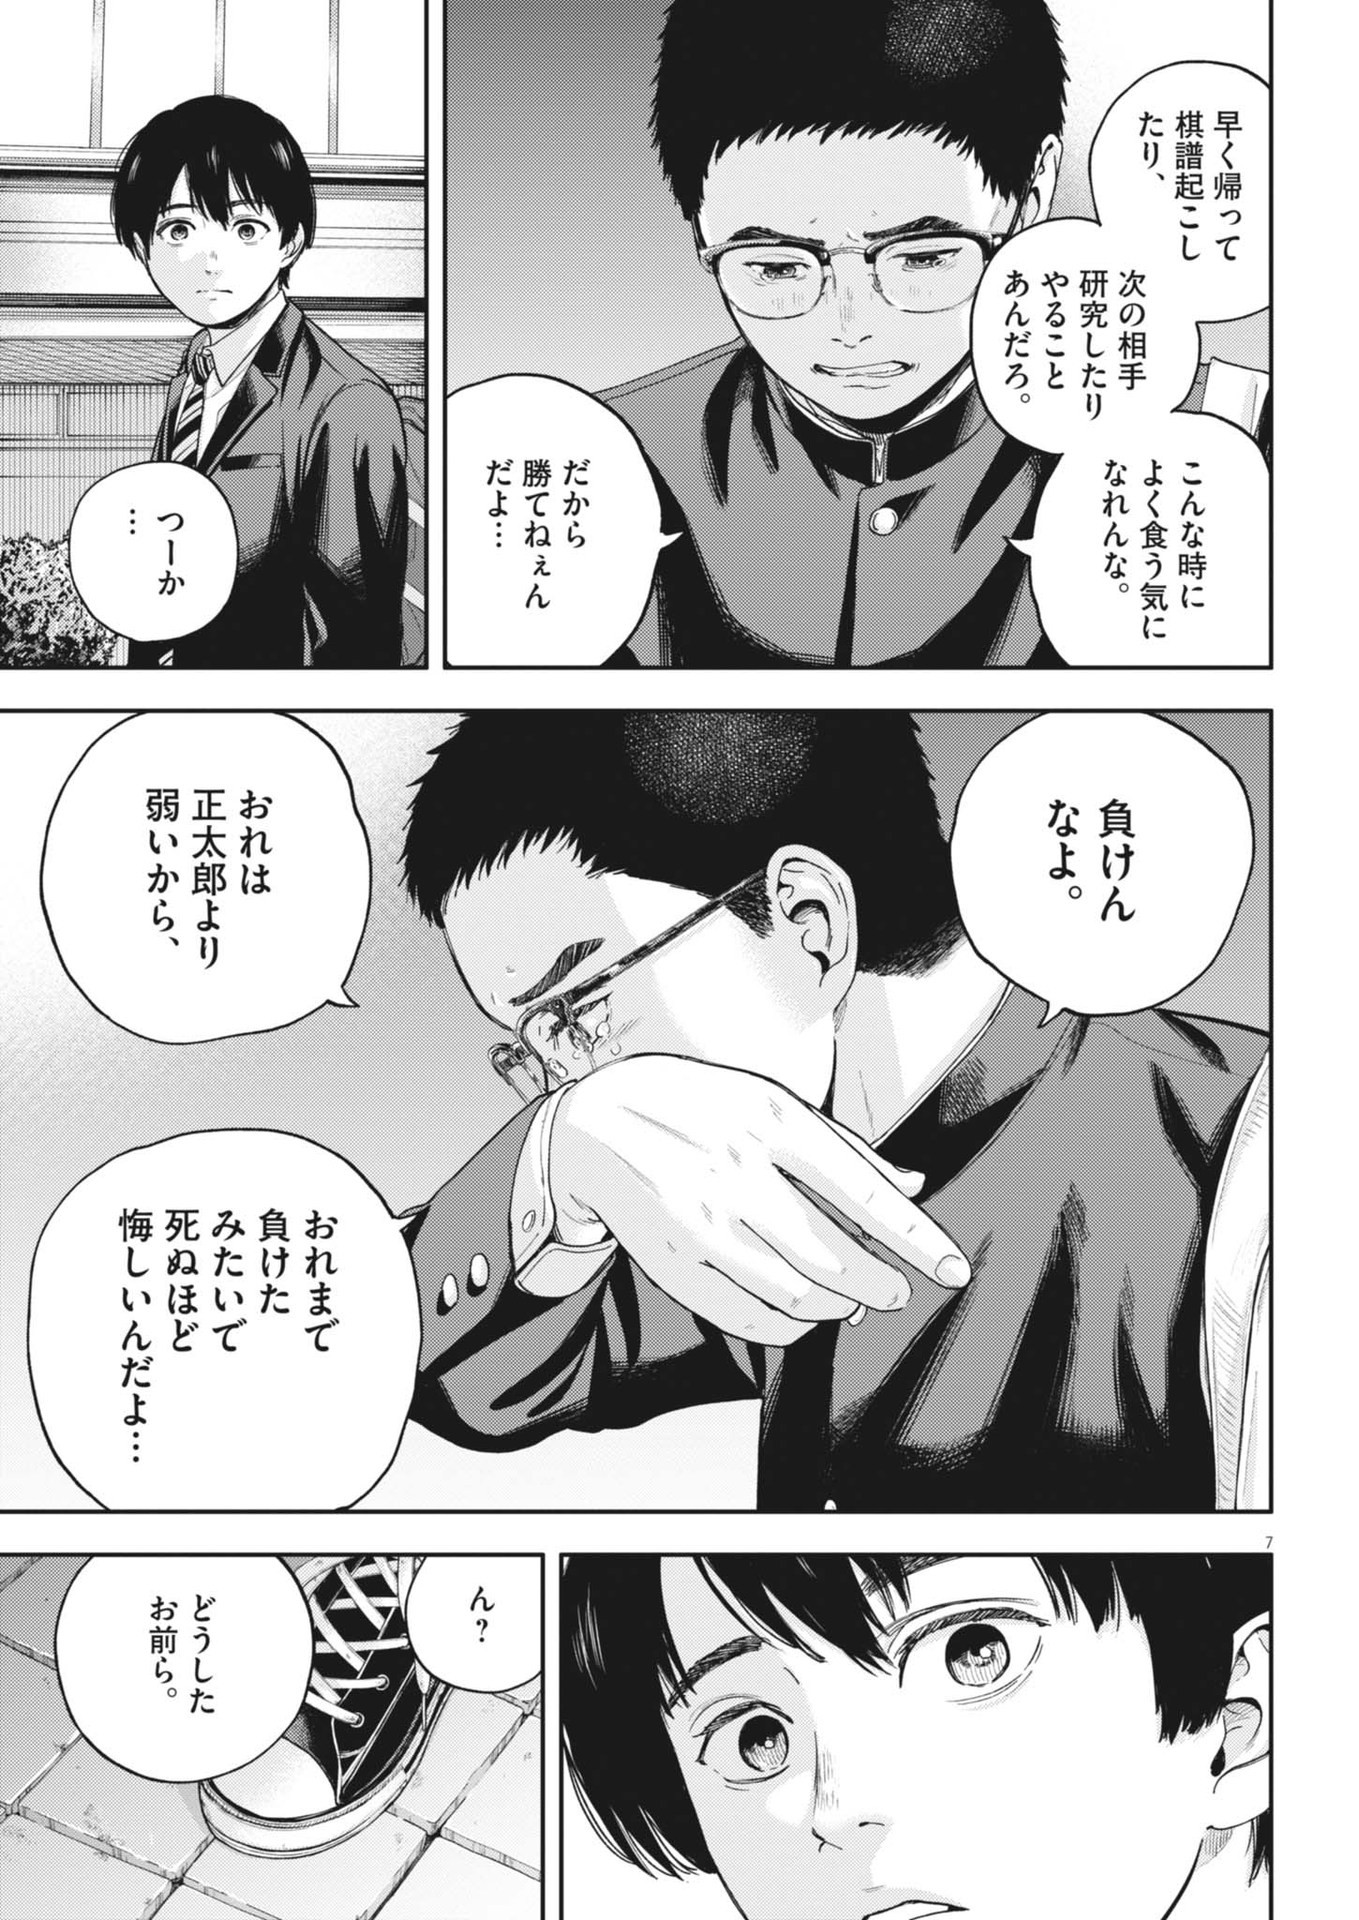 Yumenashi-sensei no Shinroshidou - Chapter 29 - Page 7